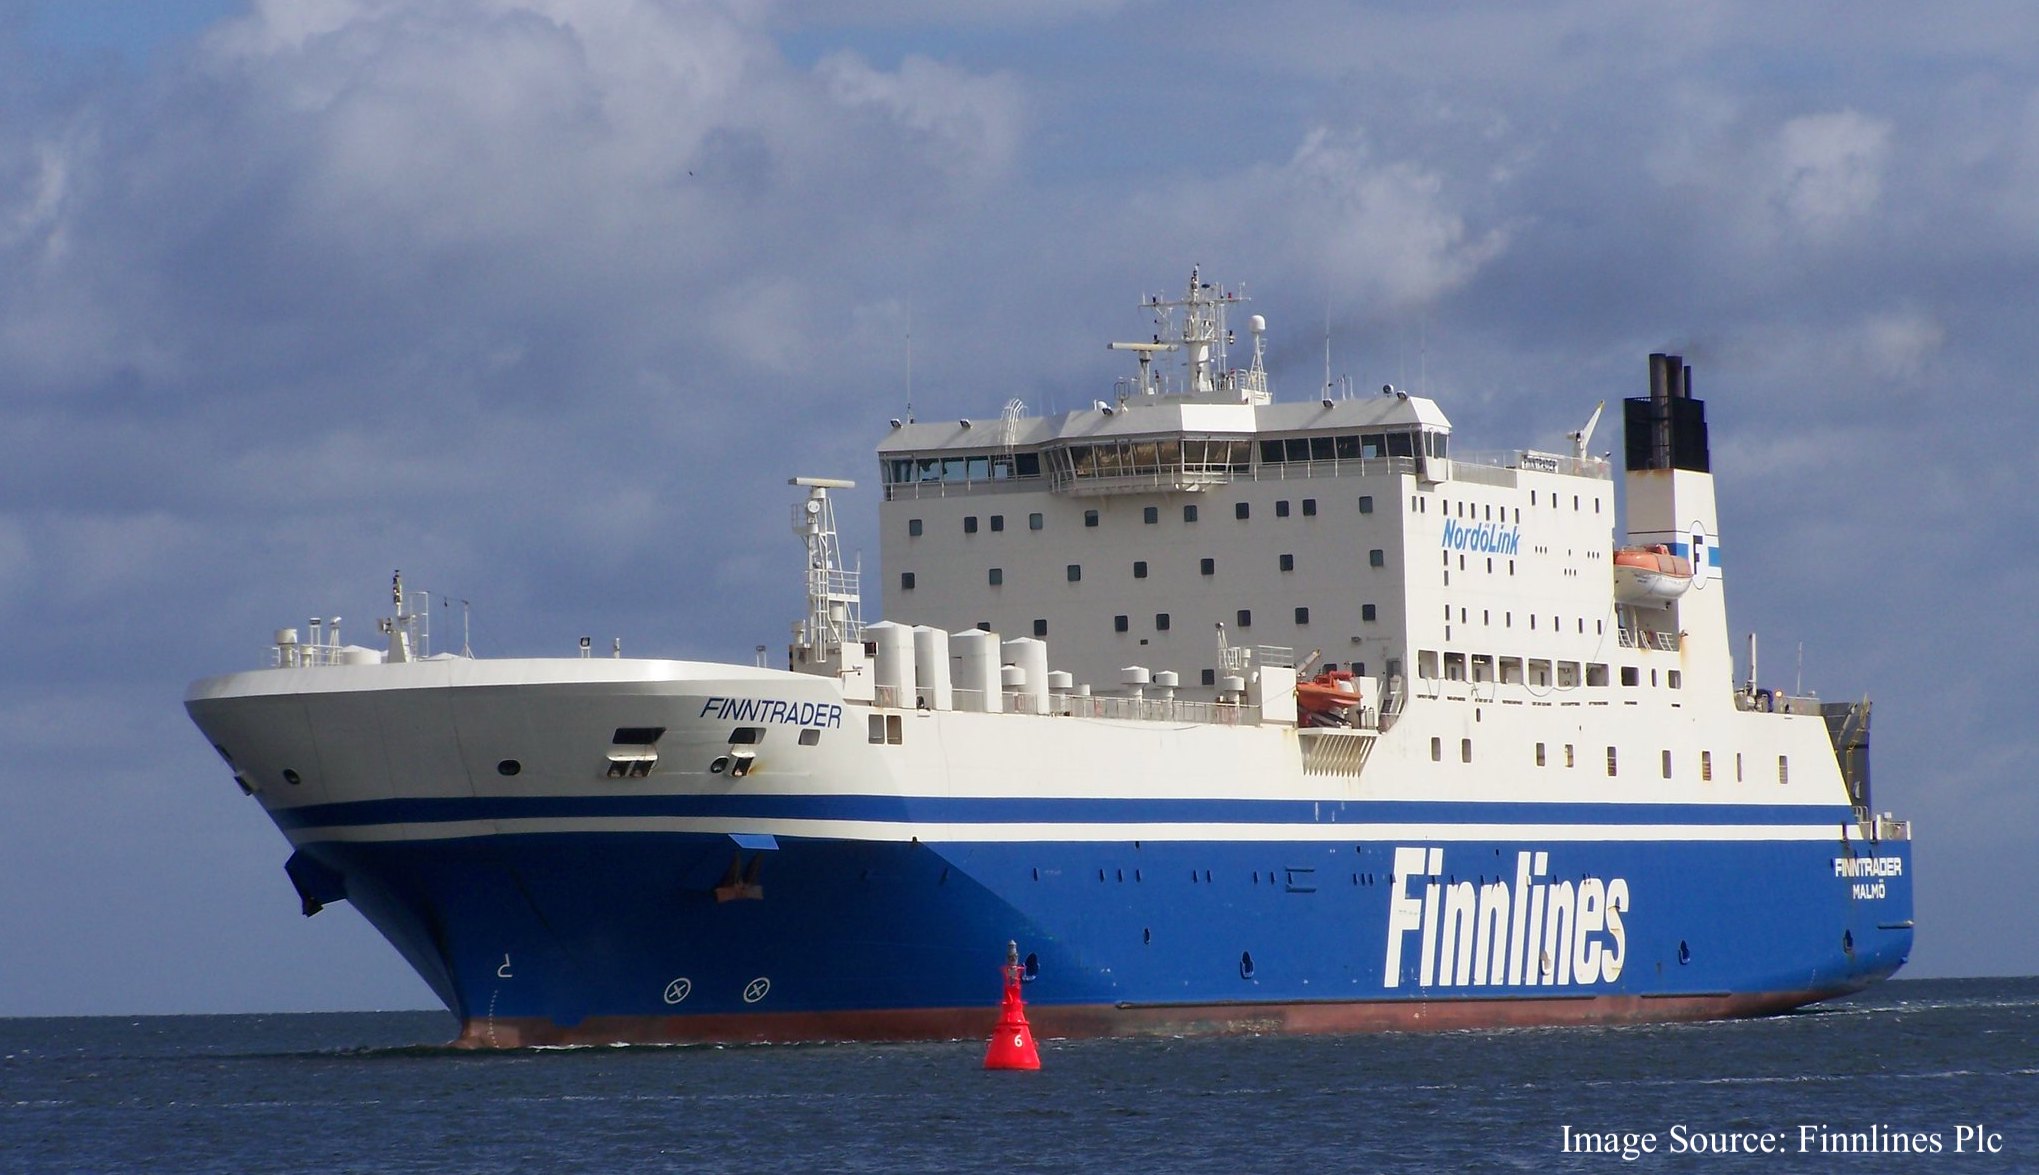 Finnlines - kuģa Finntrader foto